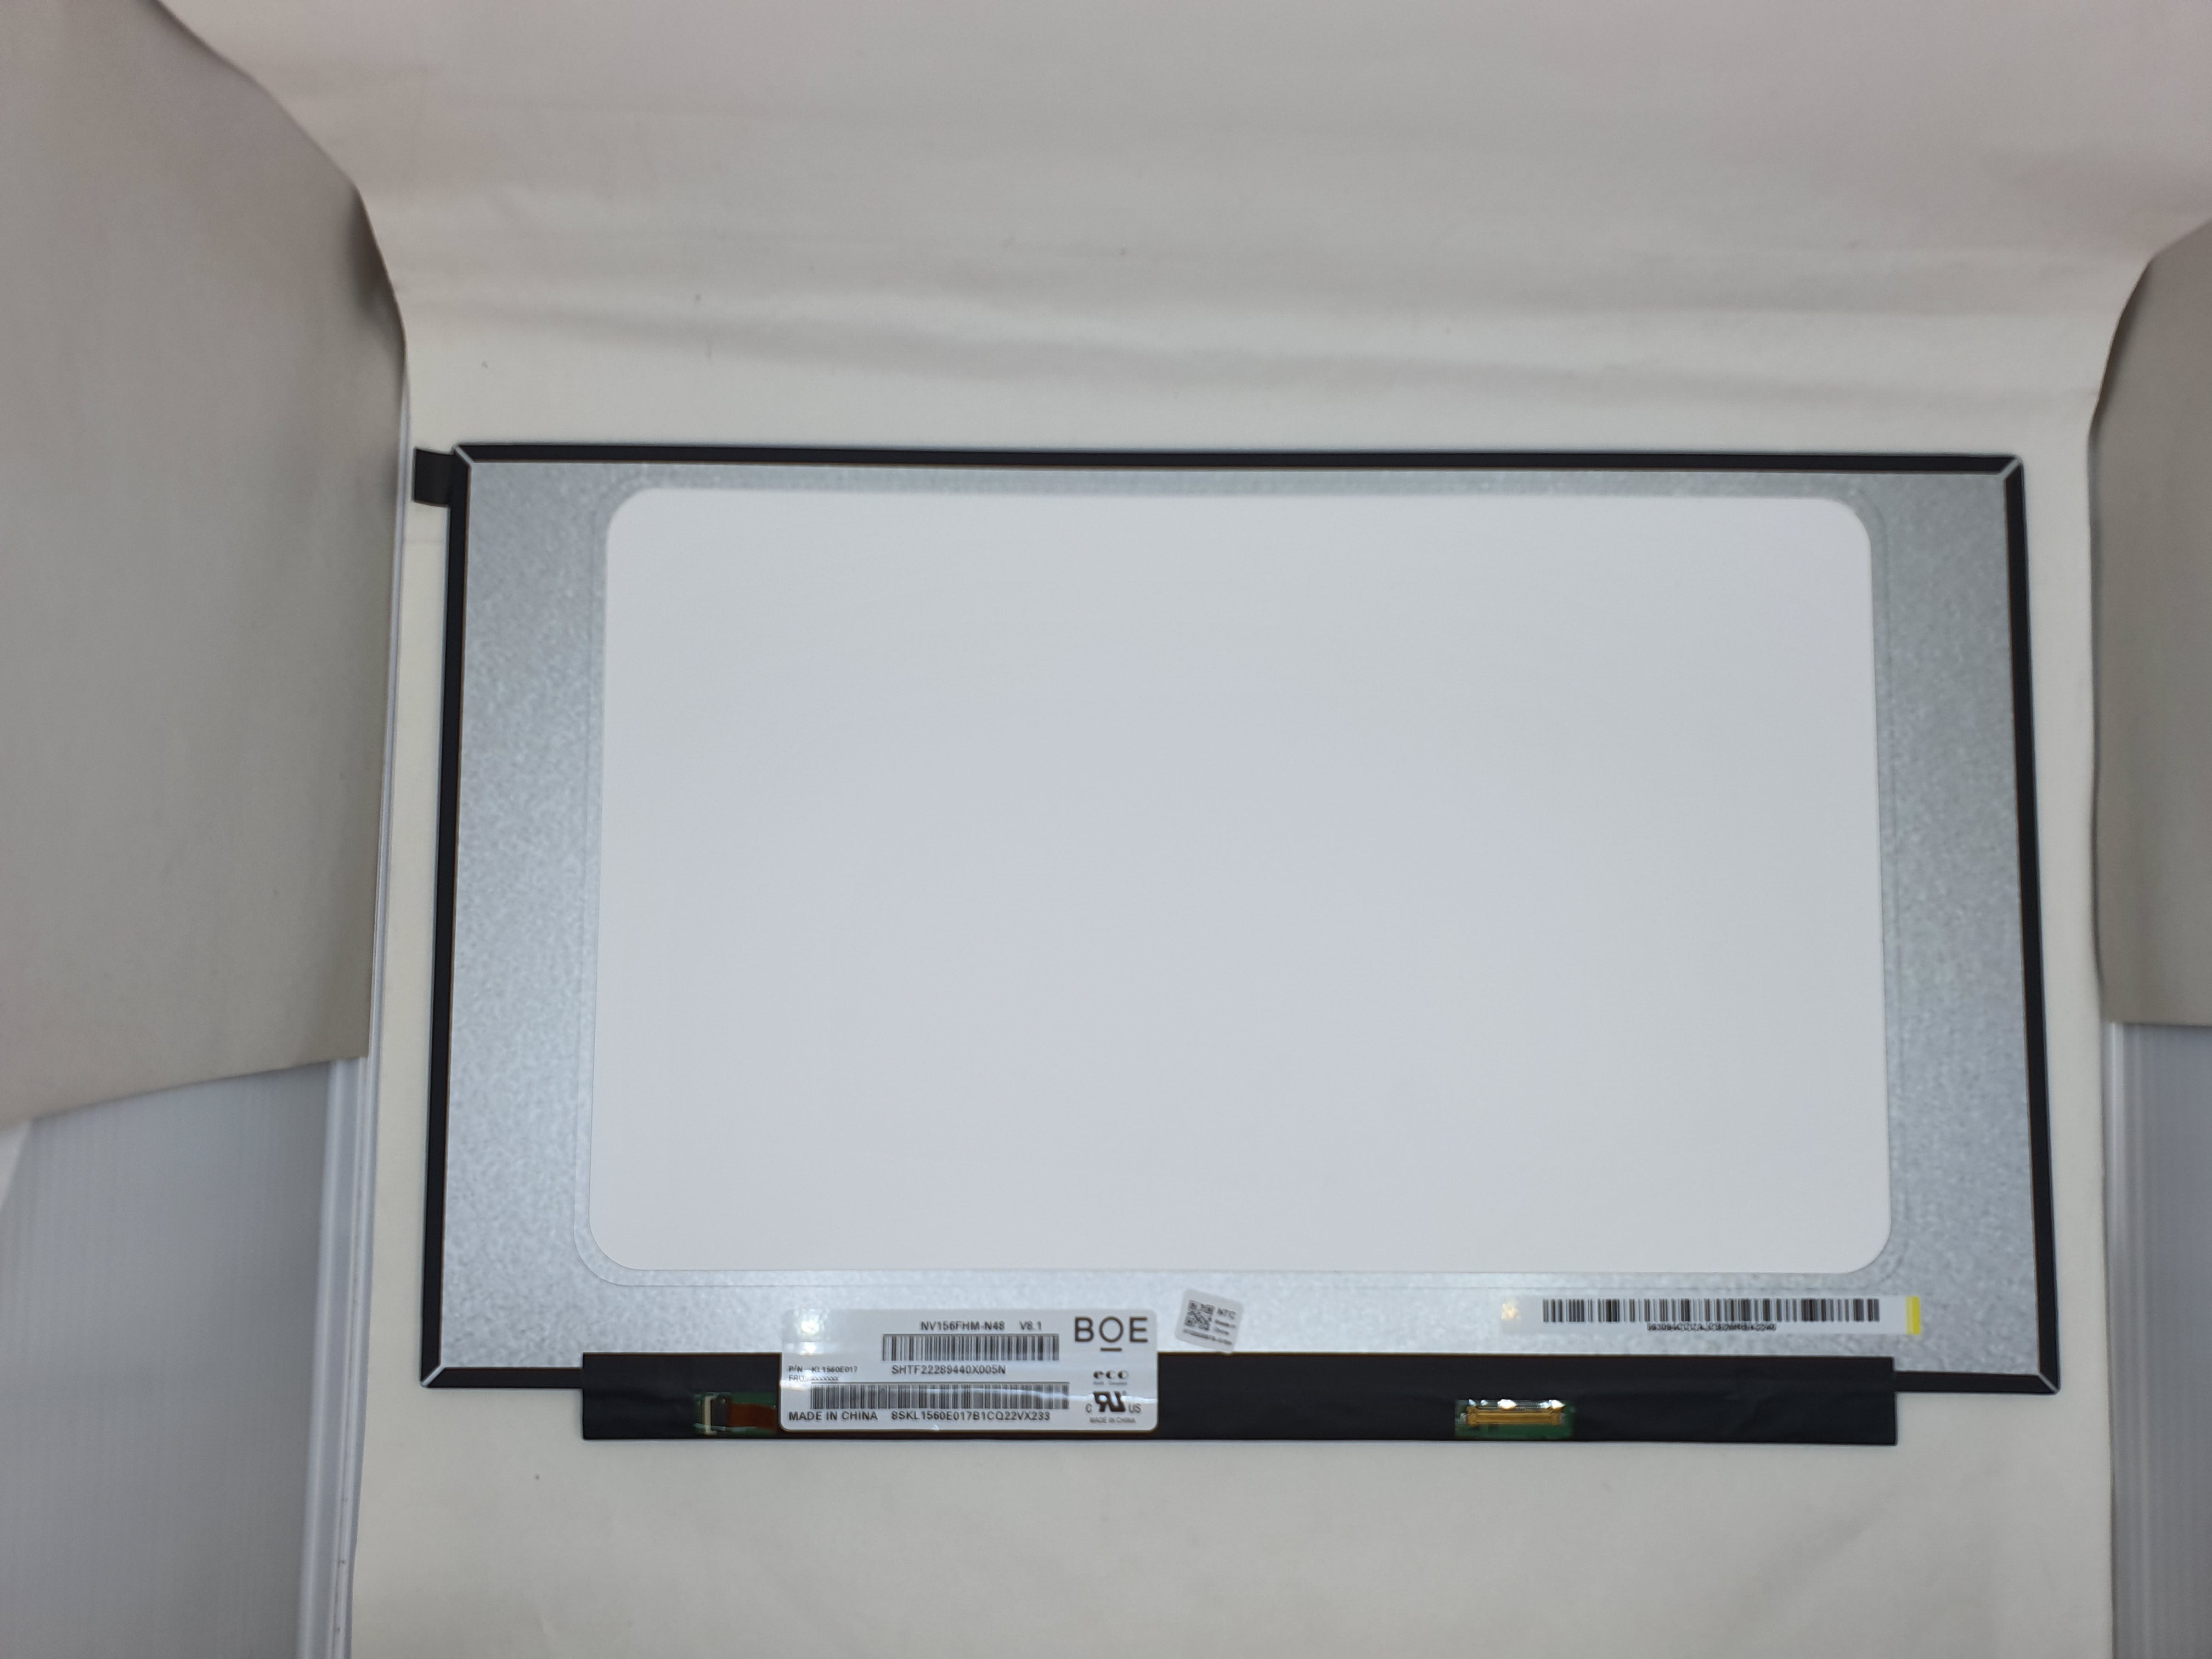 Lenovo LCD IdeaPad 3-15ALC6 WL for Lenovo IdeaPad 3-15ALC6